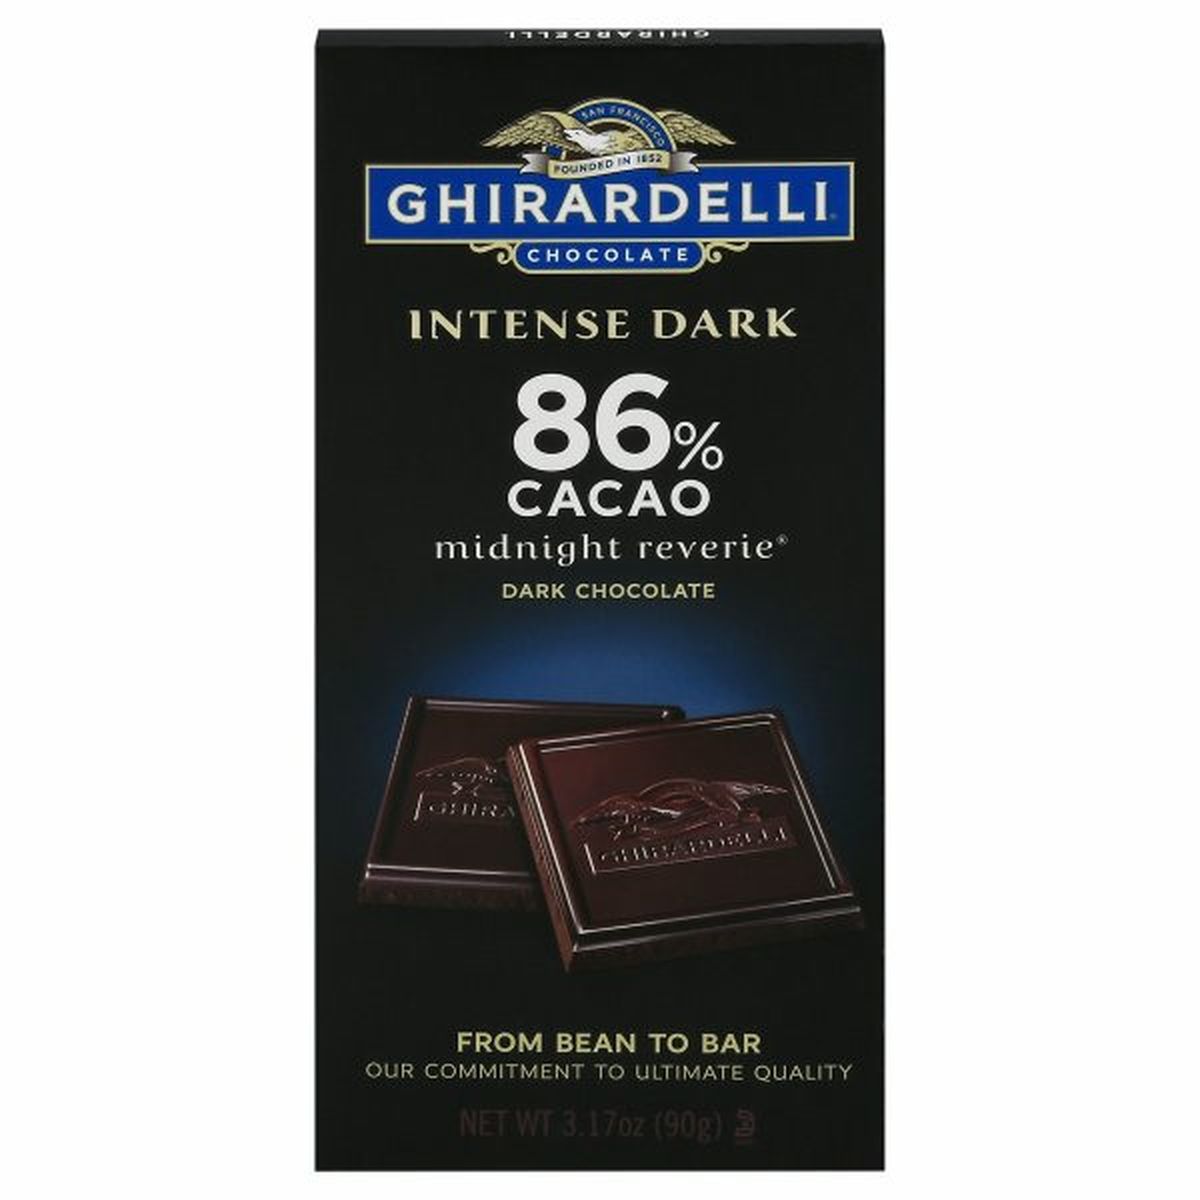 Calories in Ghirardelli Intense Dark Dark Chocolate, Midnight Reverie, 86% Cacao